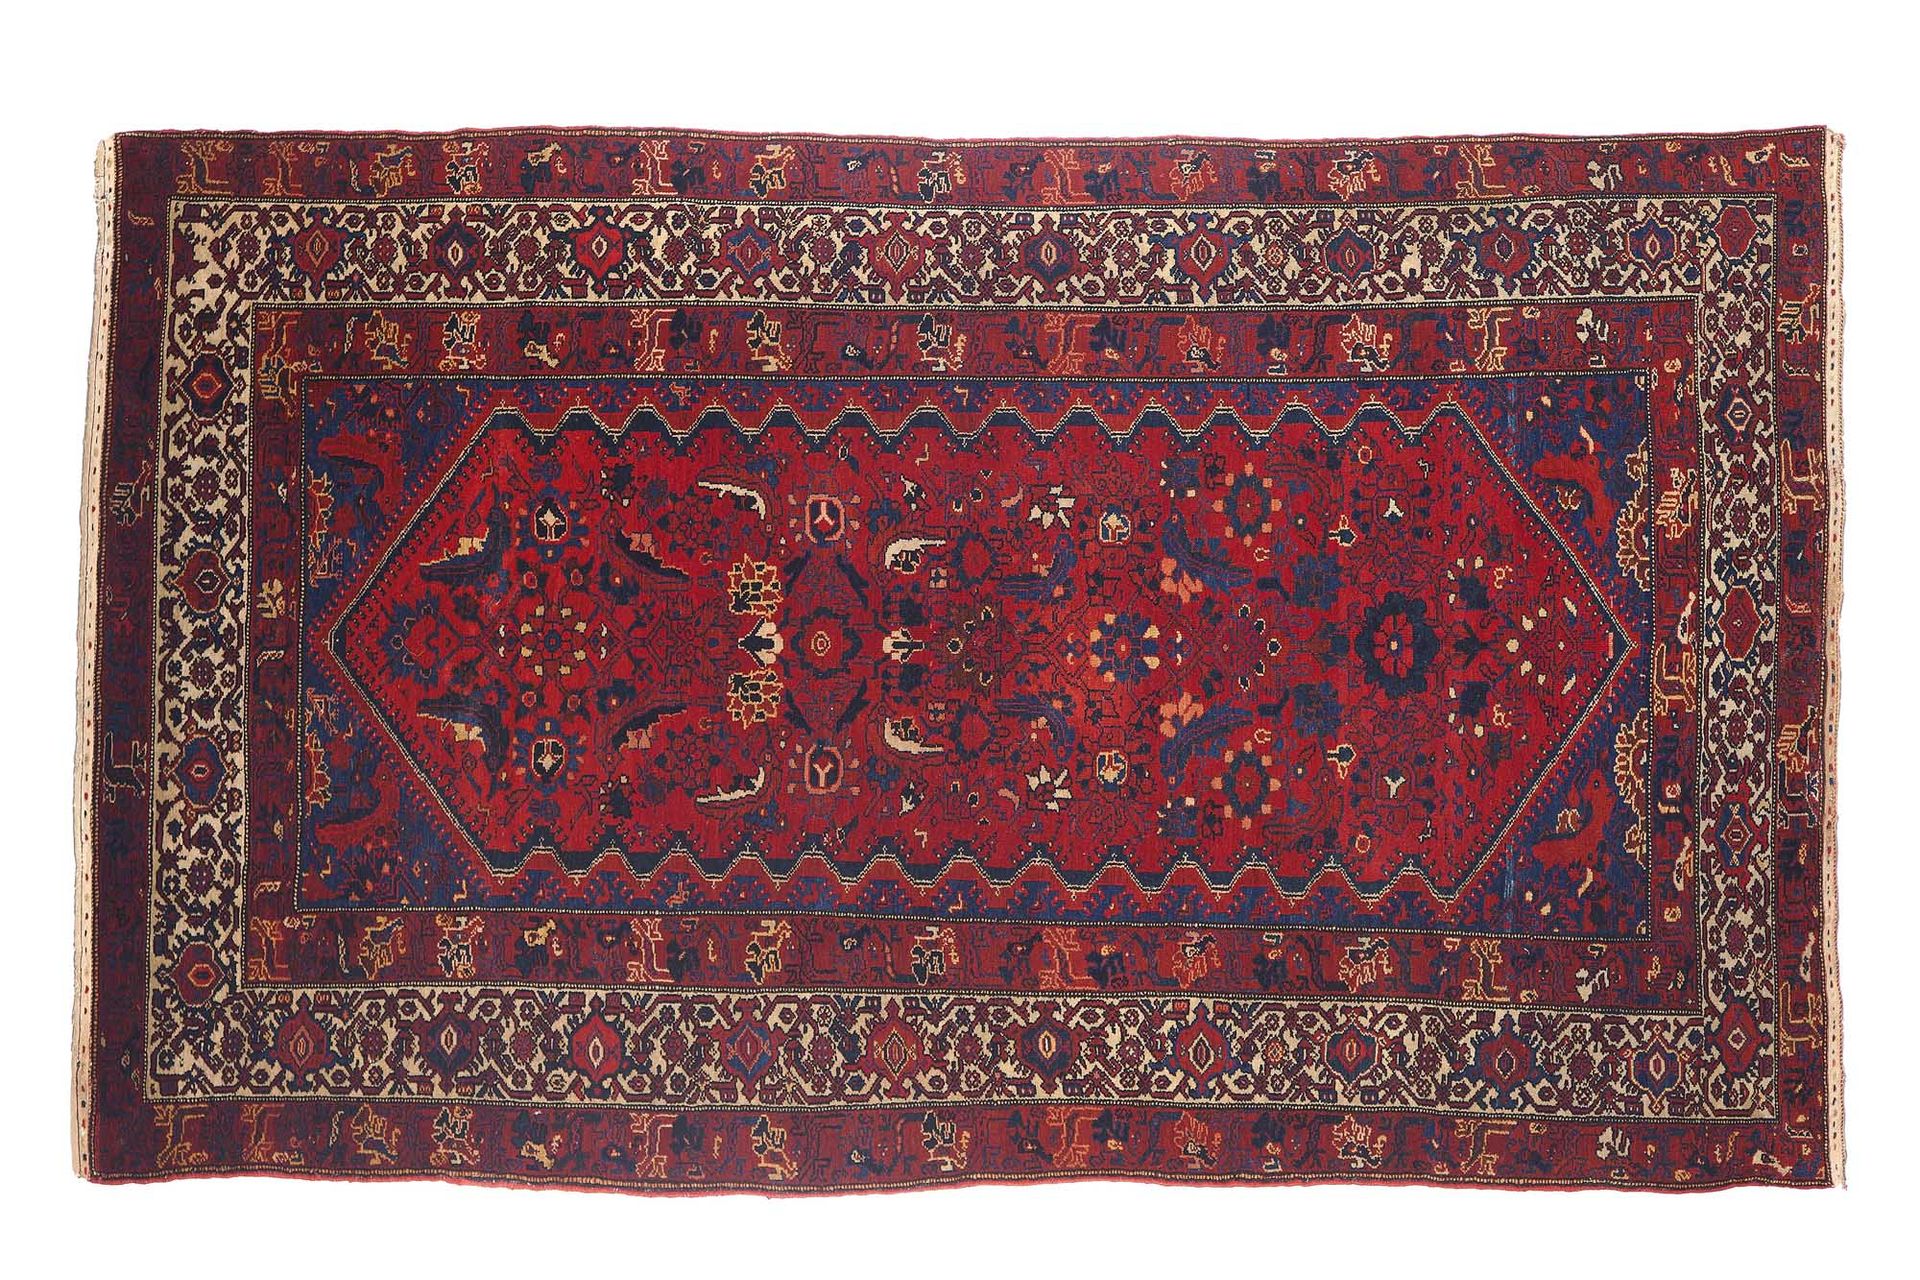 Null Bel tappeto MELAYER (Persia), fine del 19° secolo

Dimensioni: 194 x 115cm
&hellip;